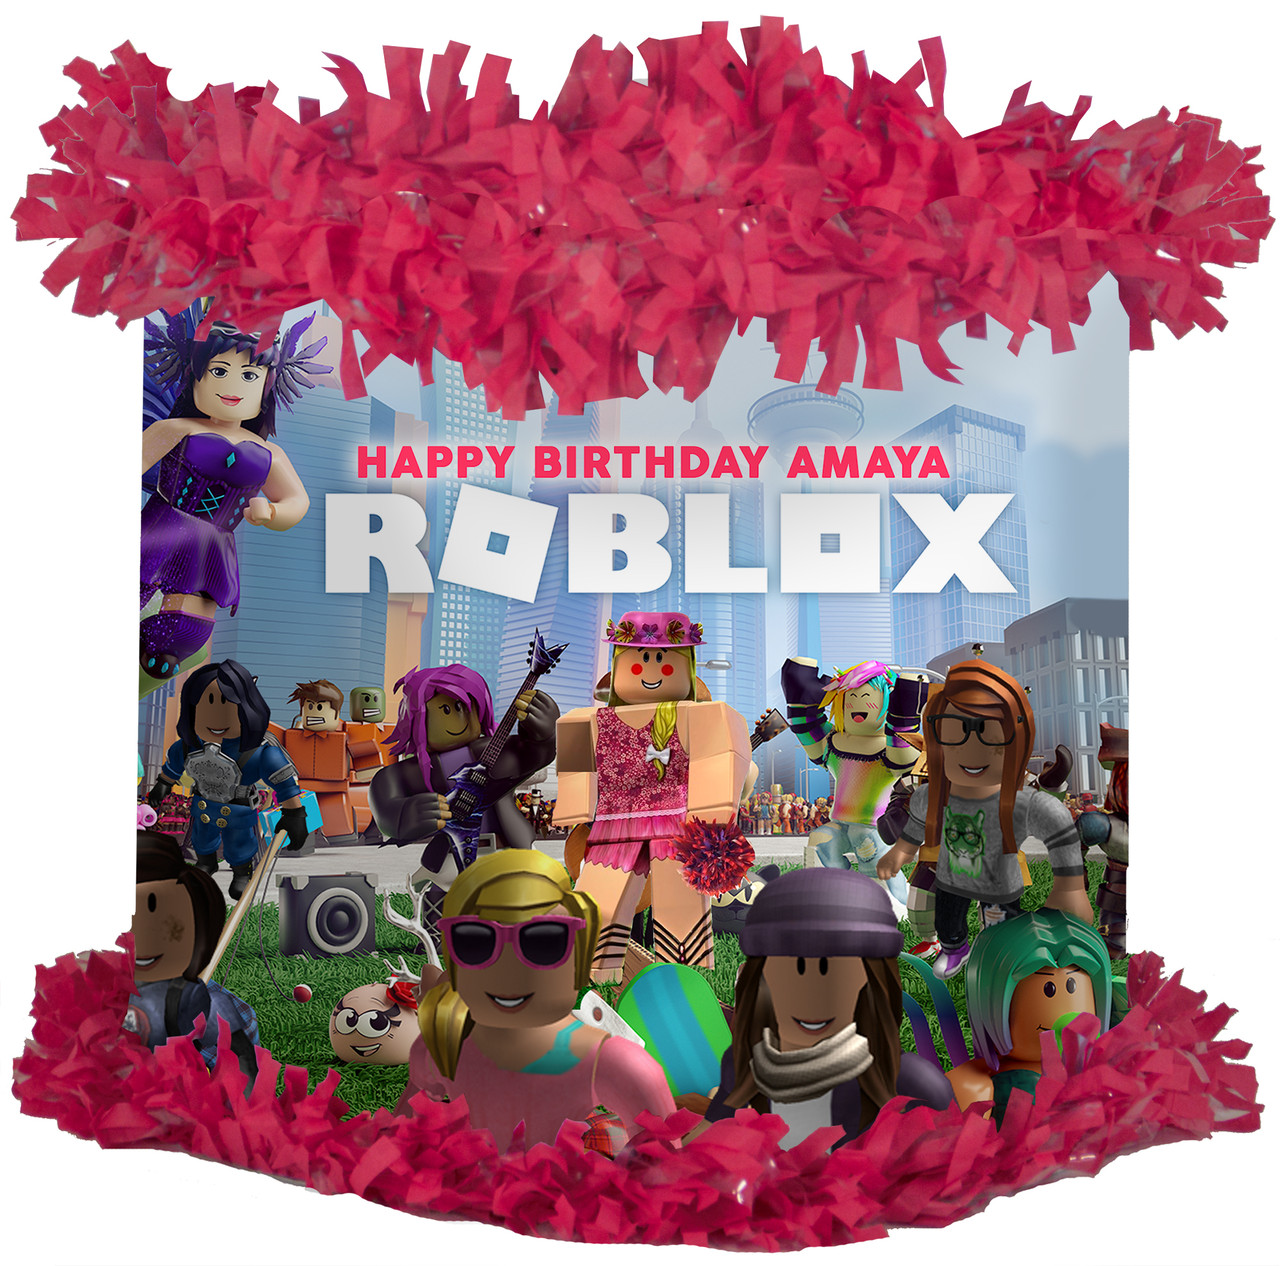 Roblox un personaje con mucha personalidad y estilo 😎 #roblox  #piñataroblox #piñataspersonalizadas